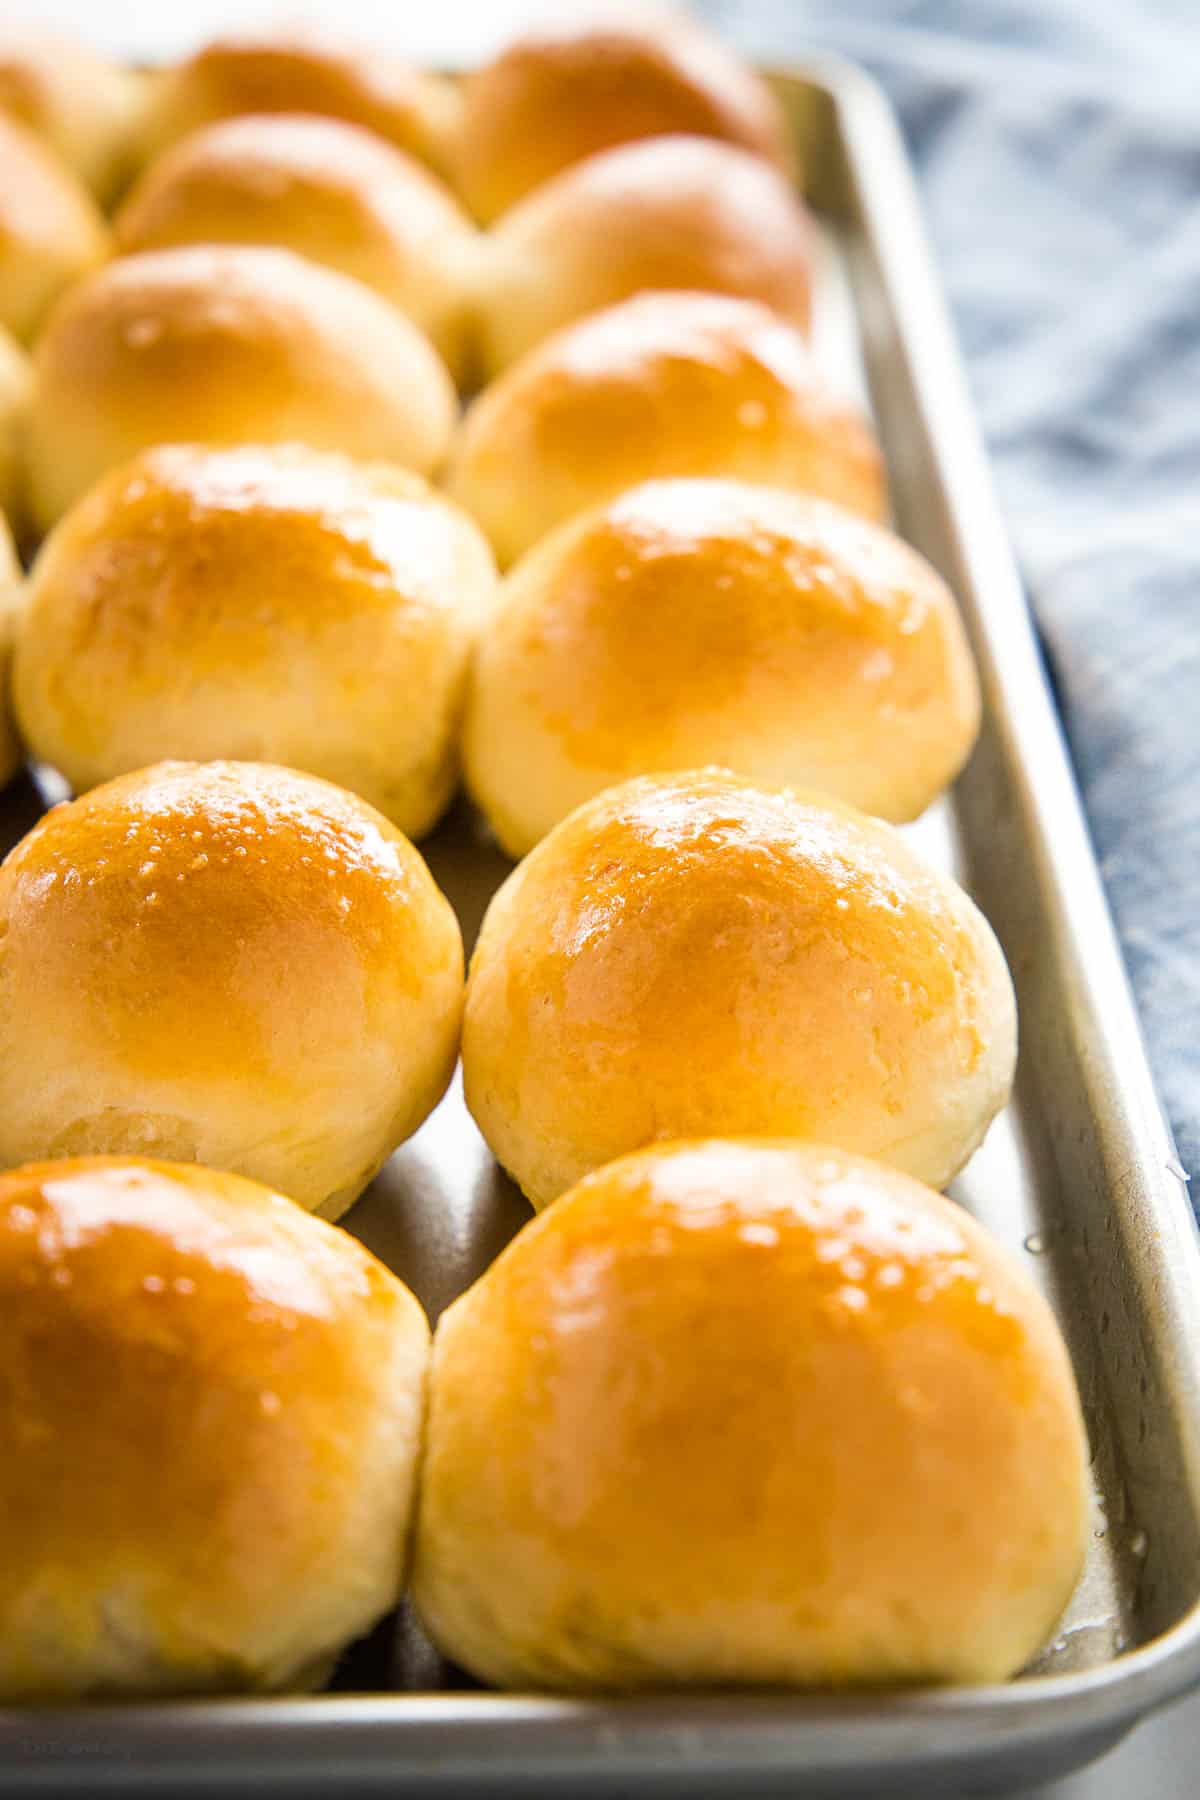 pan of golden brown buns